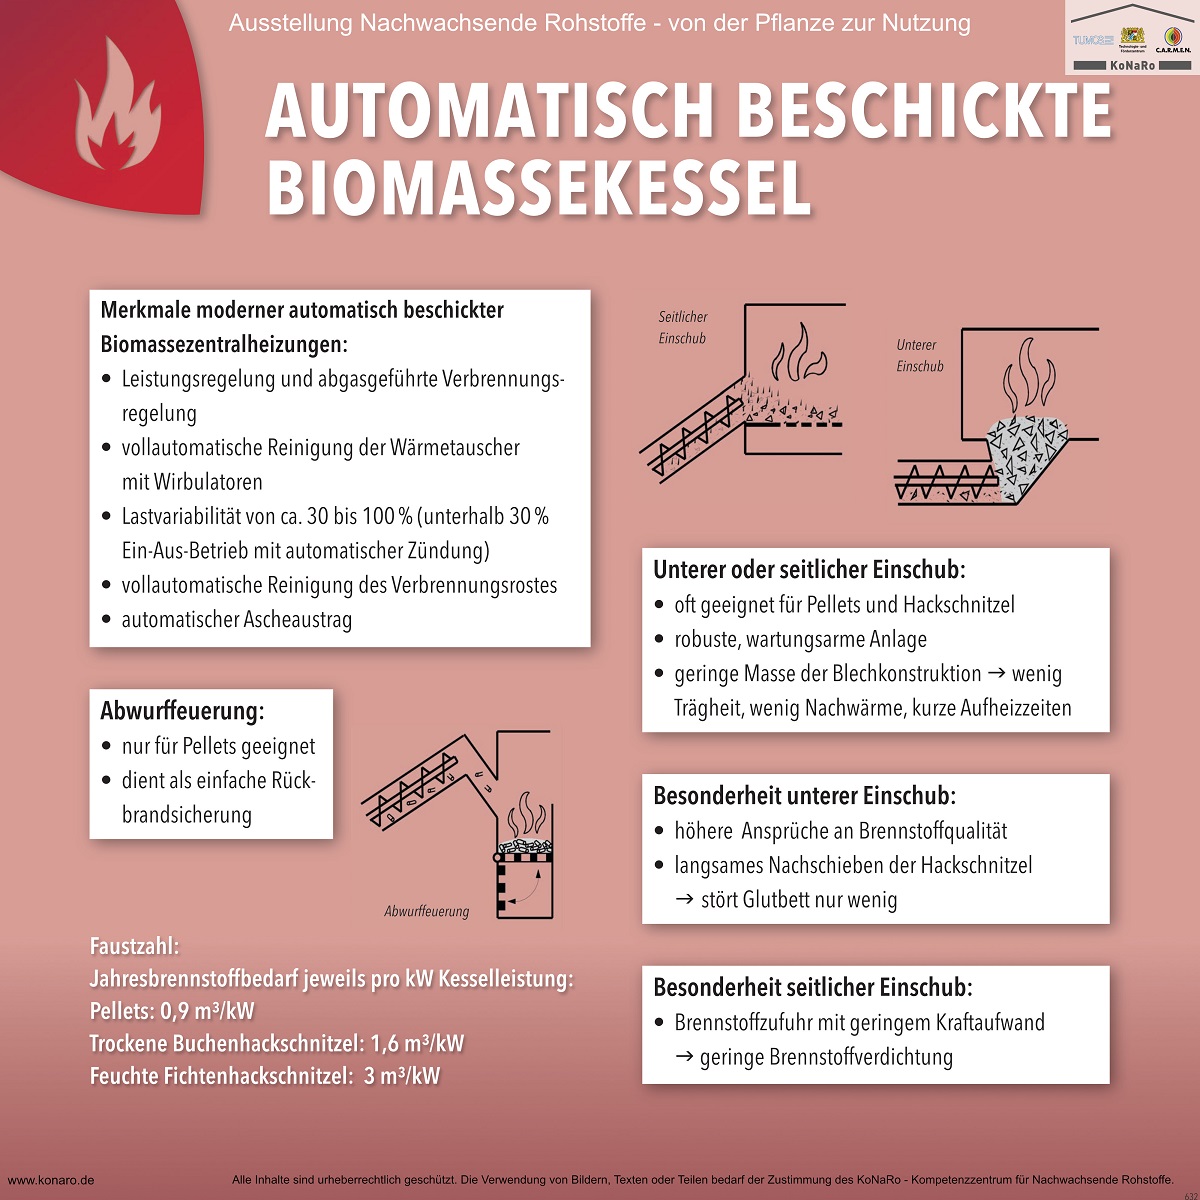 Abteilung 6: Automatisch beschickte Biomassekessel